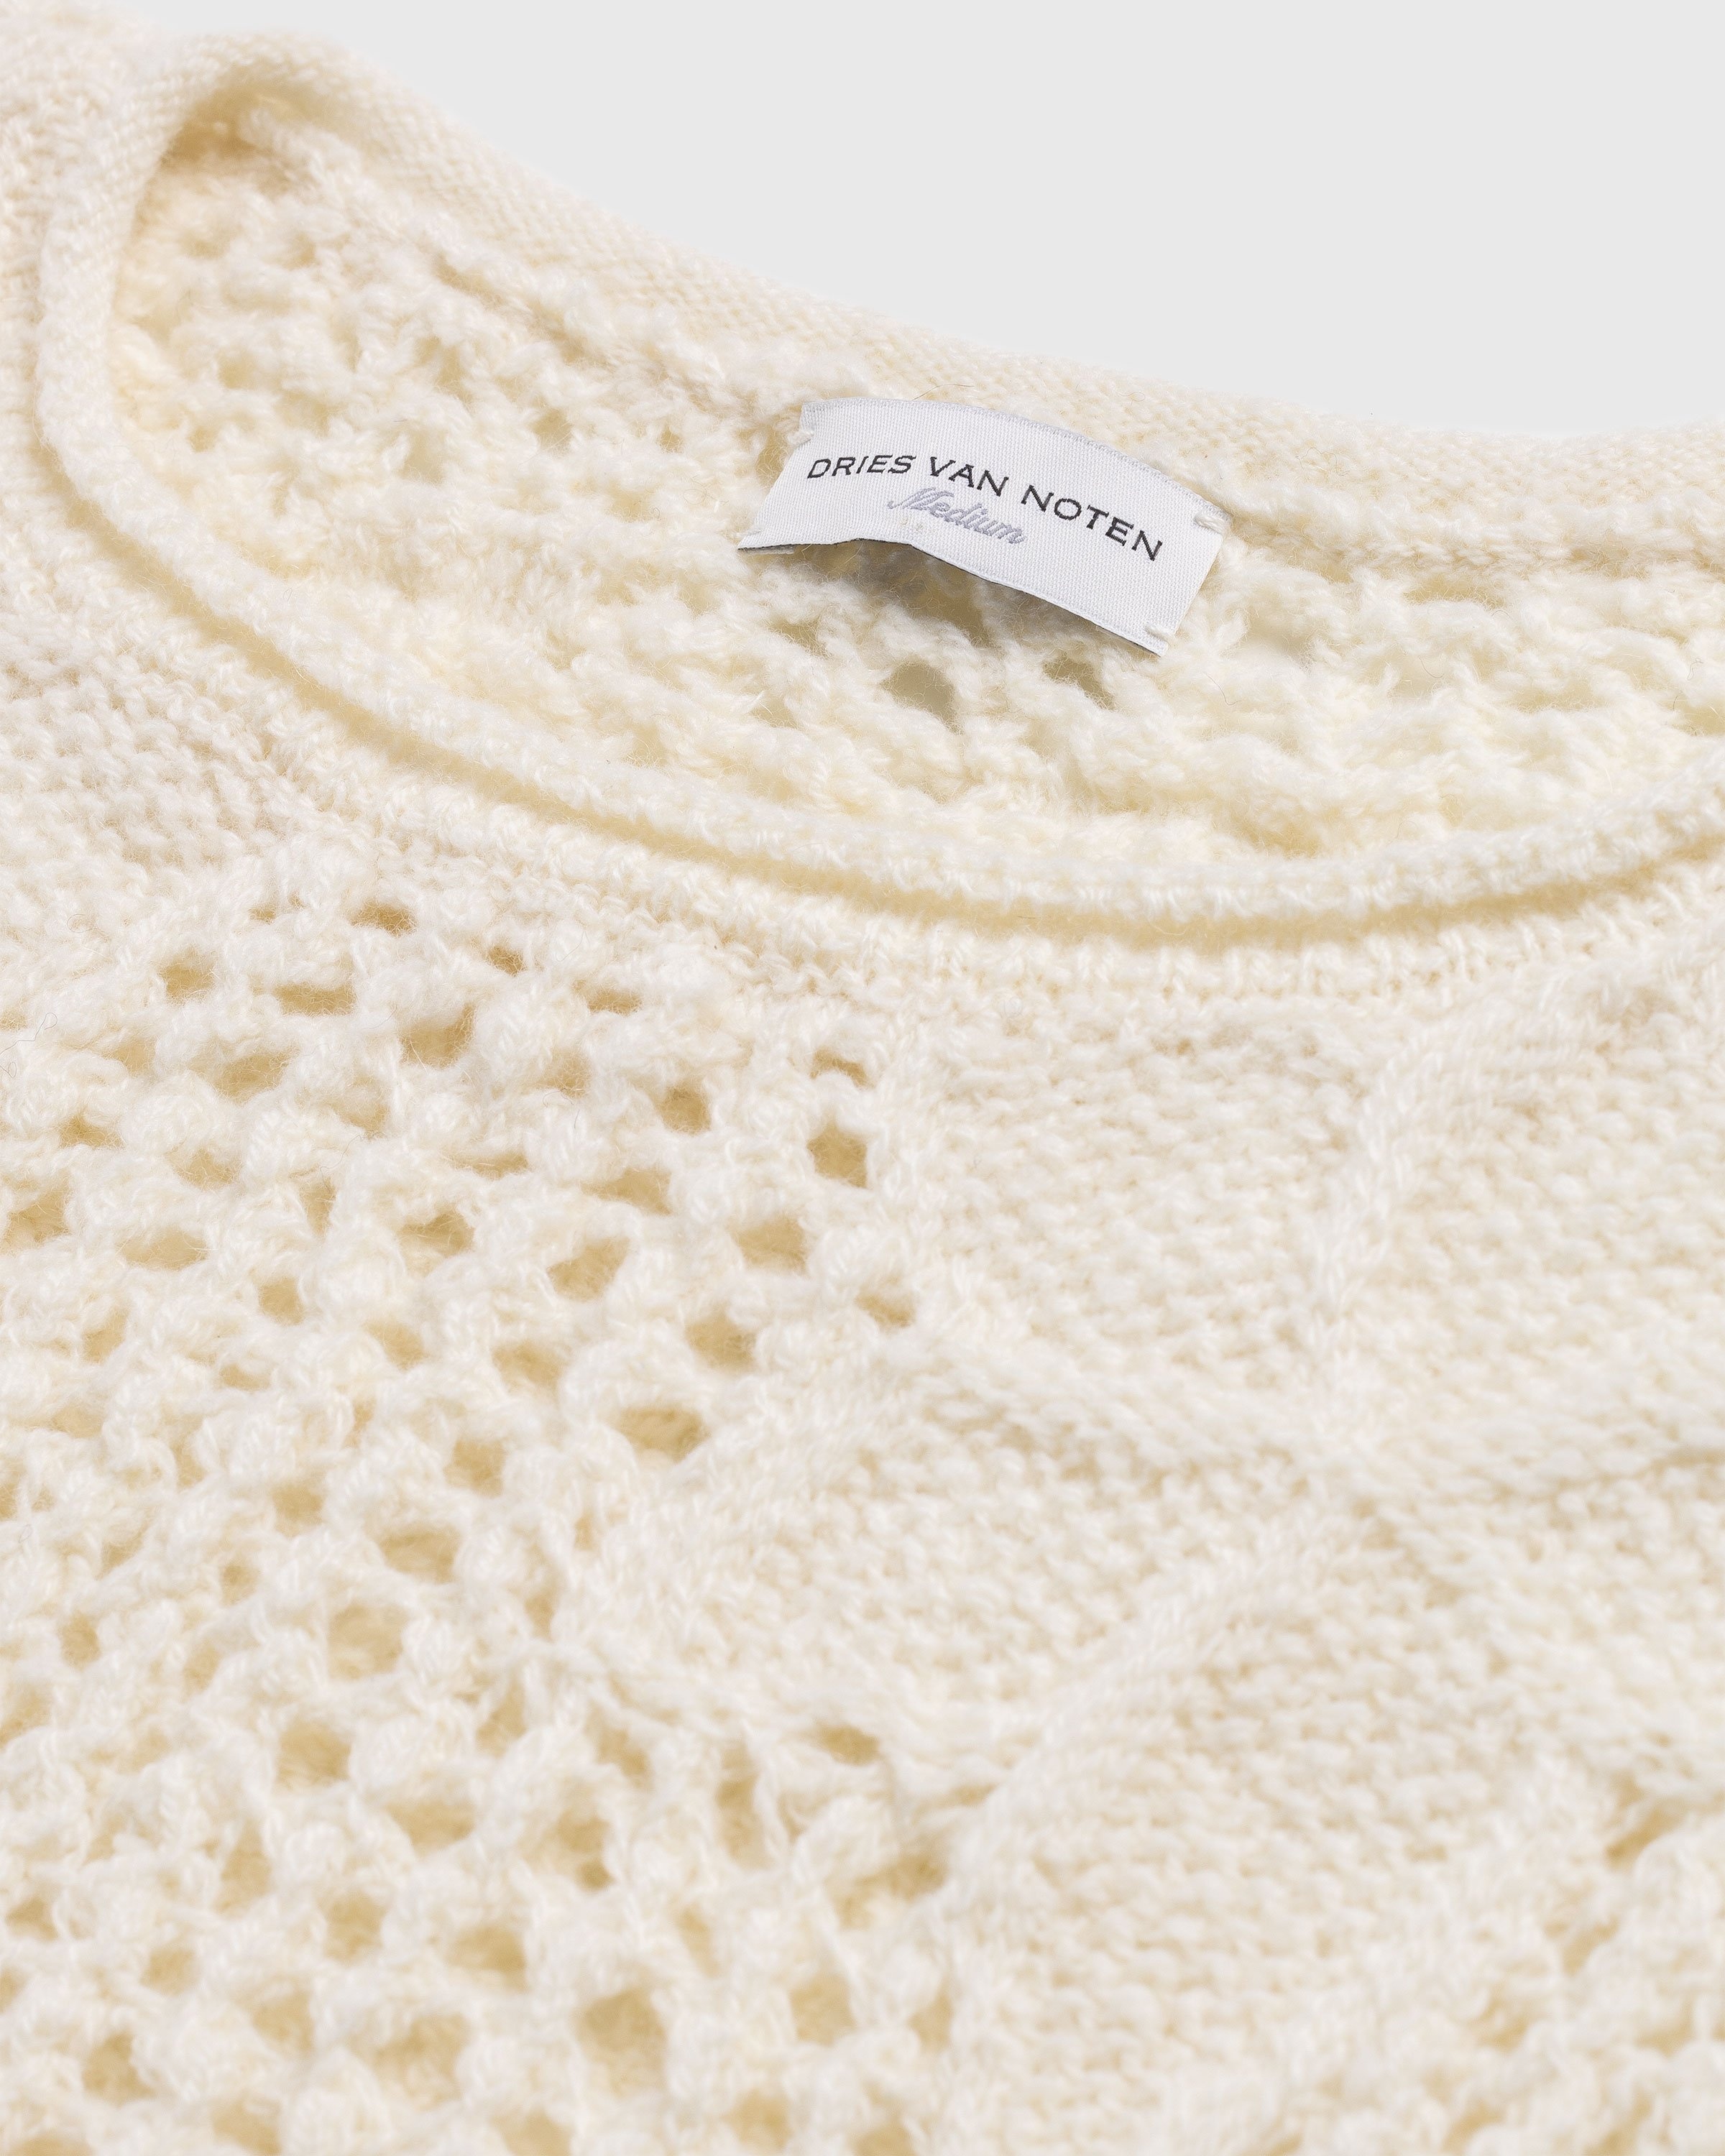 Dries van Noten – Meddo Knit Sweater Vest Ecru - Knitwear - White - Image 5